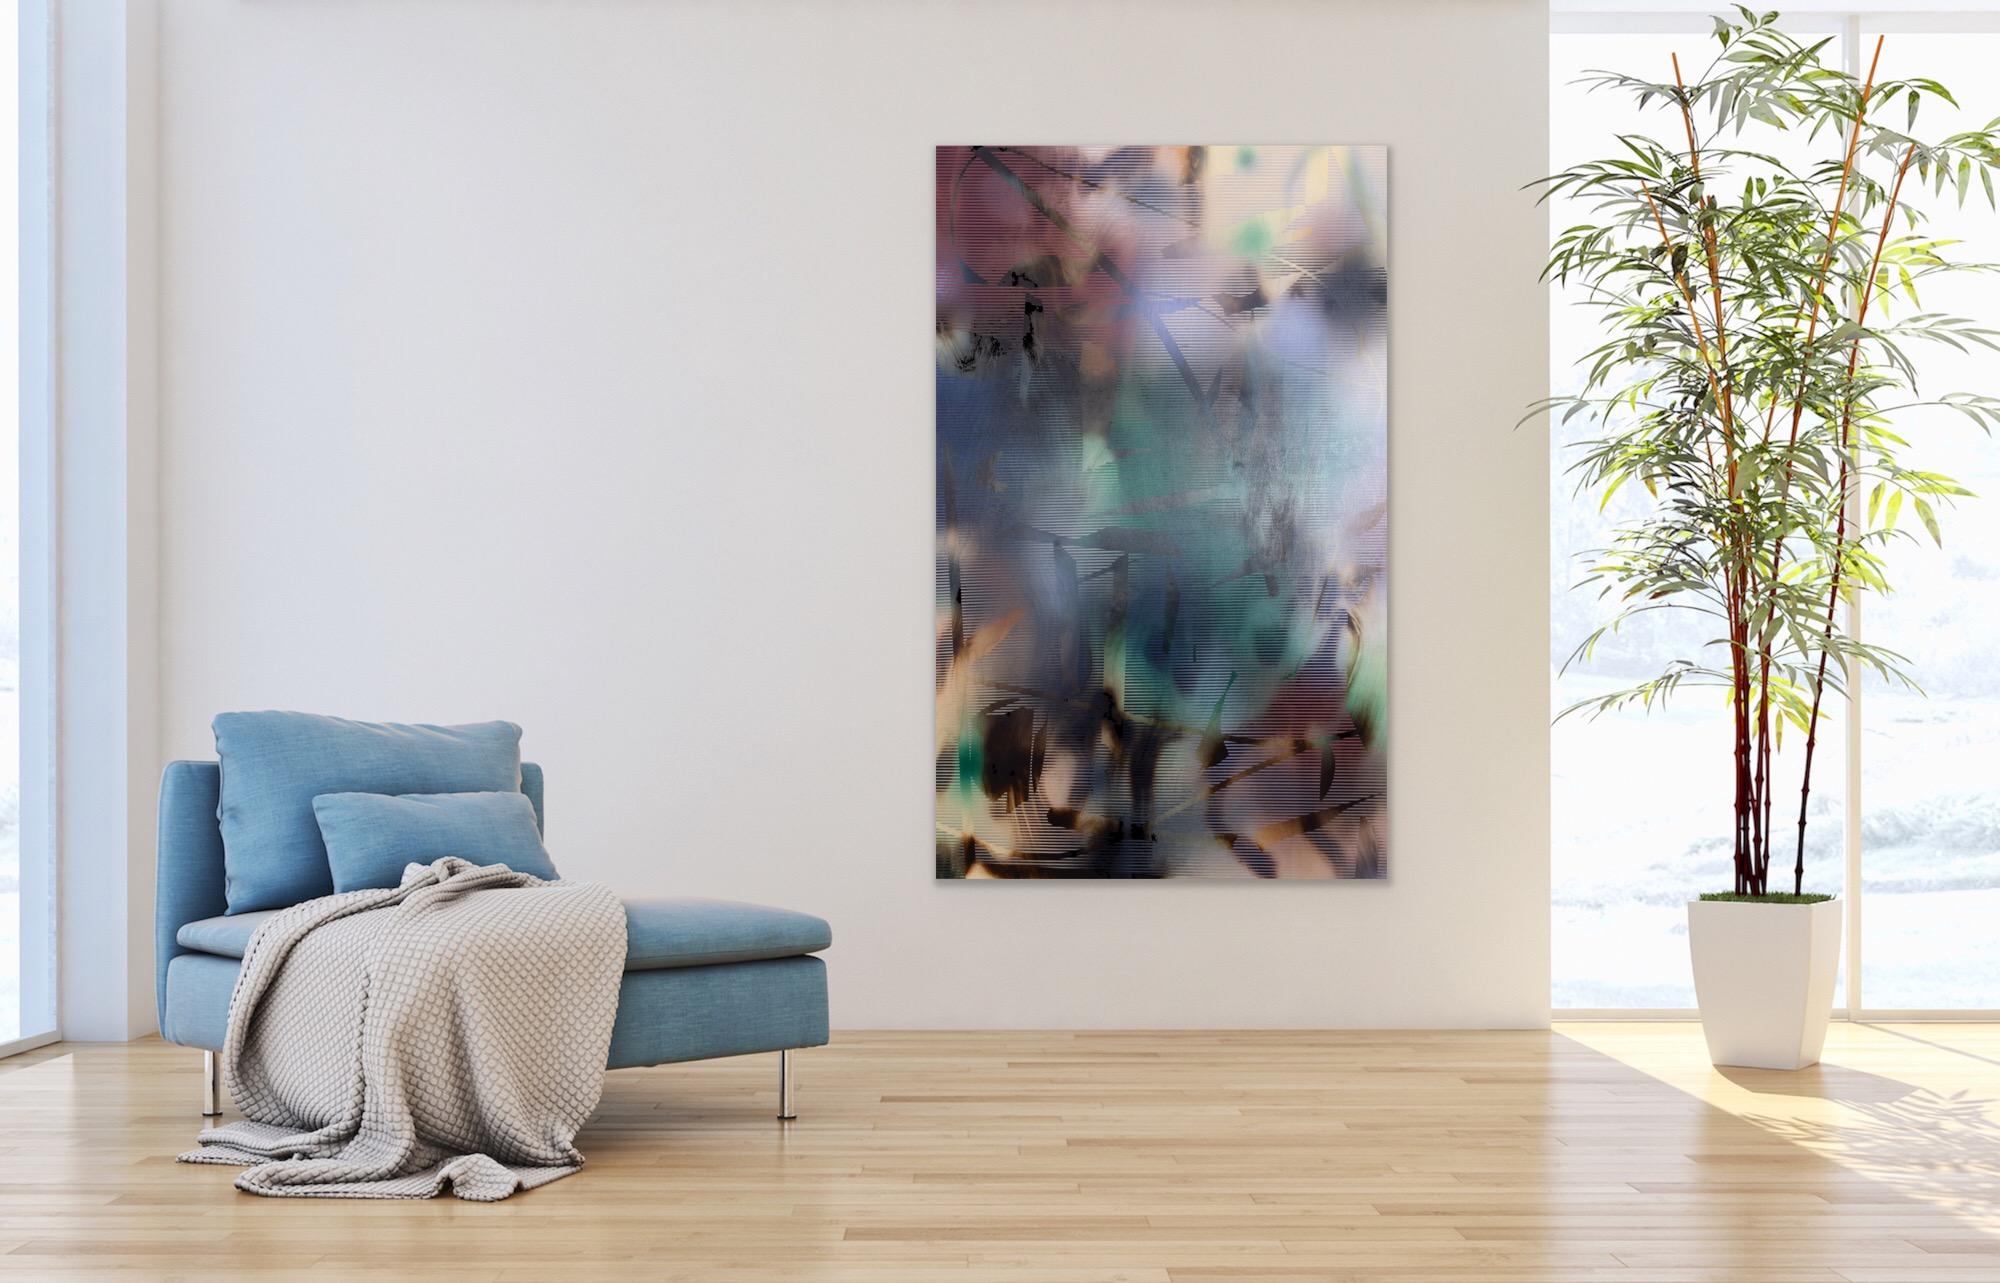 d'Ombr 6 (peinture à grille rouge géométrique abstraite rayée et gestuelle bleu hard-edge) - Painting de Melisa Taylor Metzger